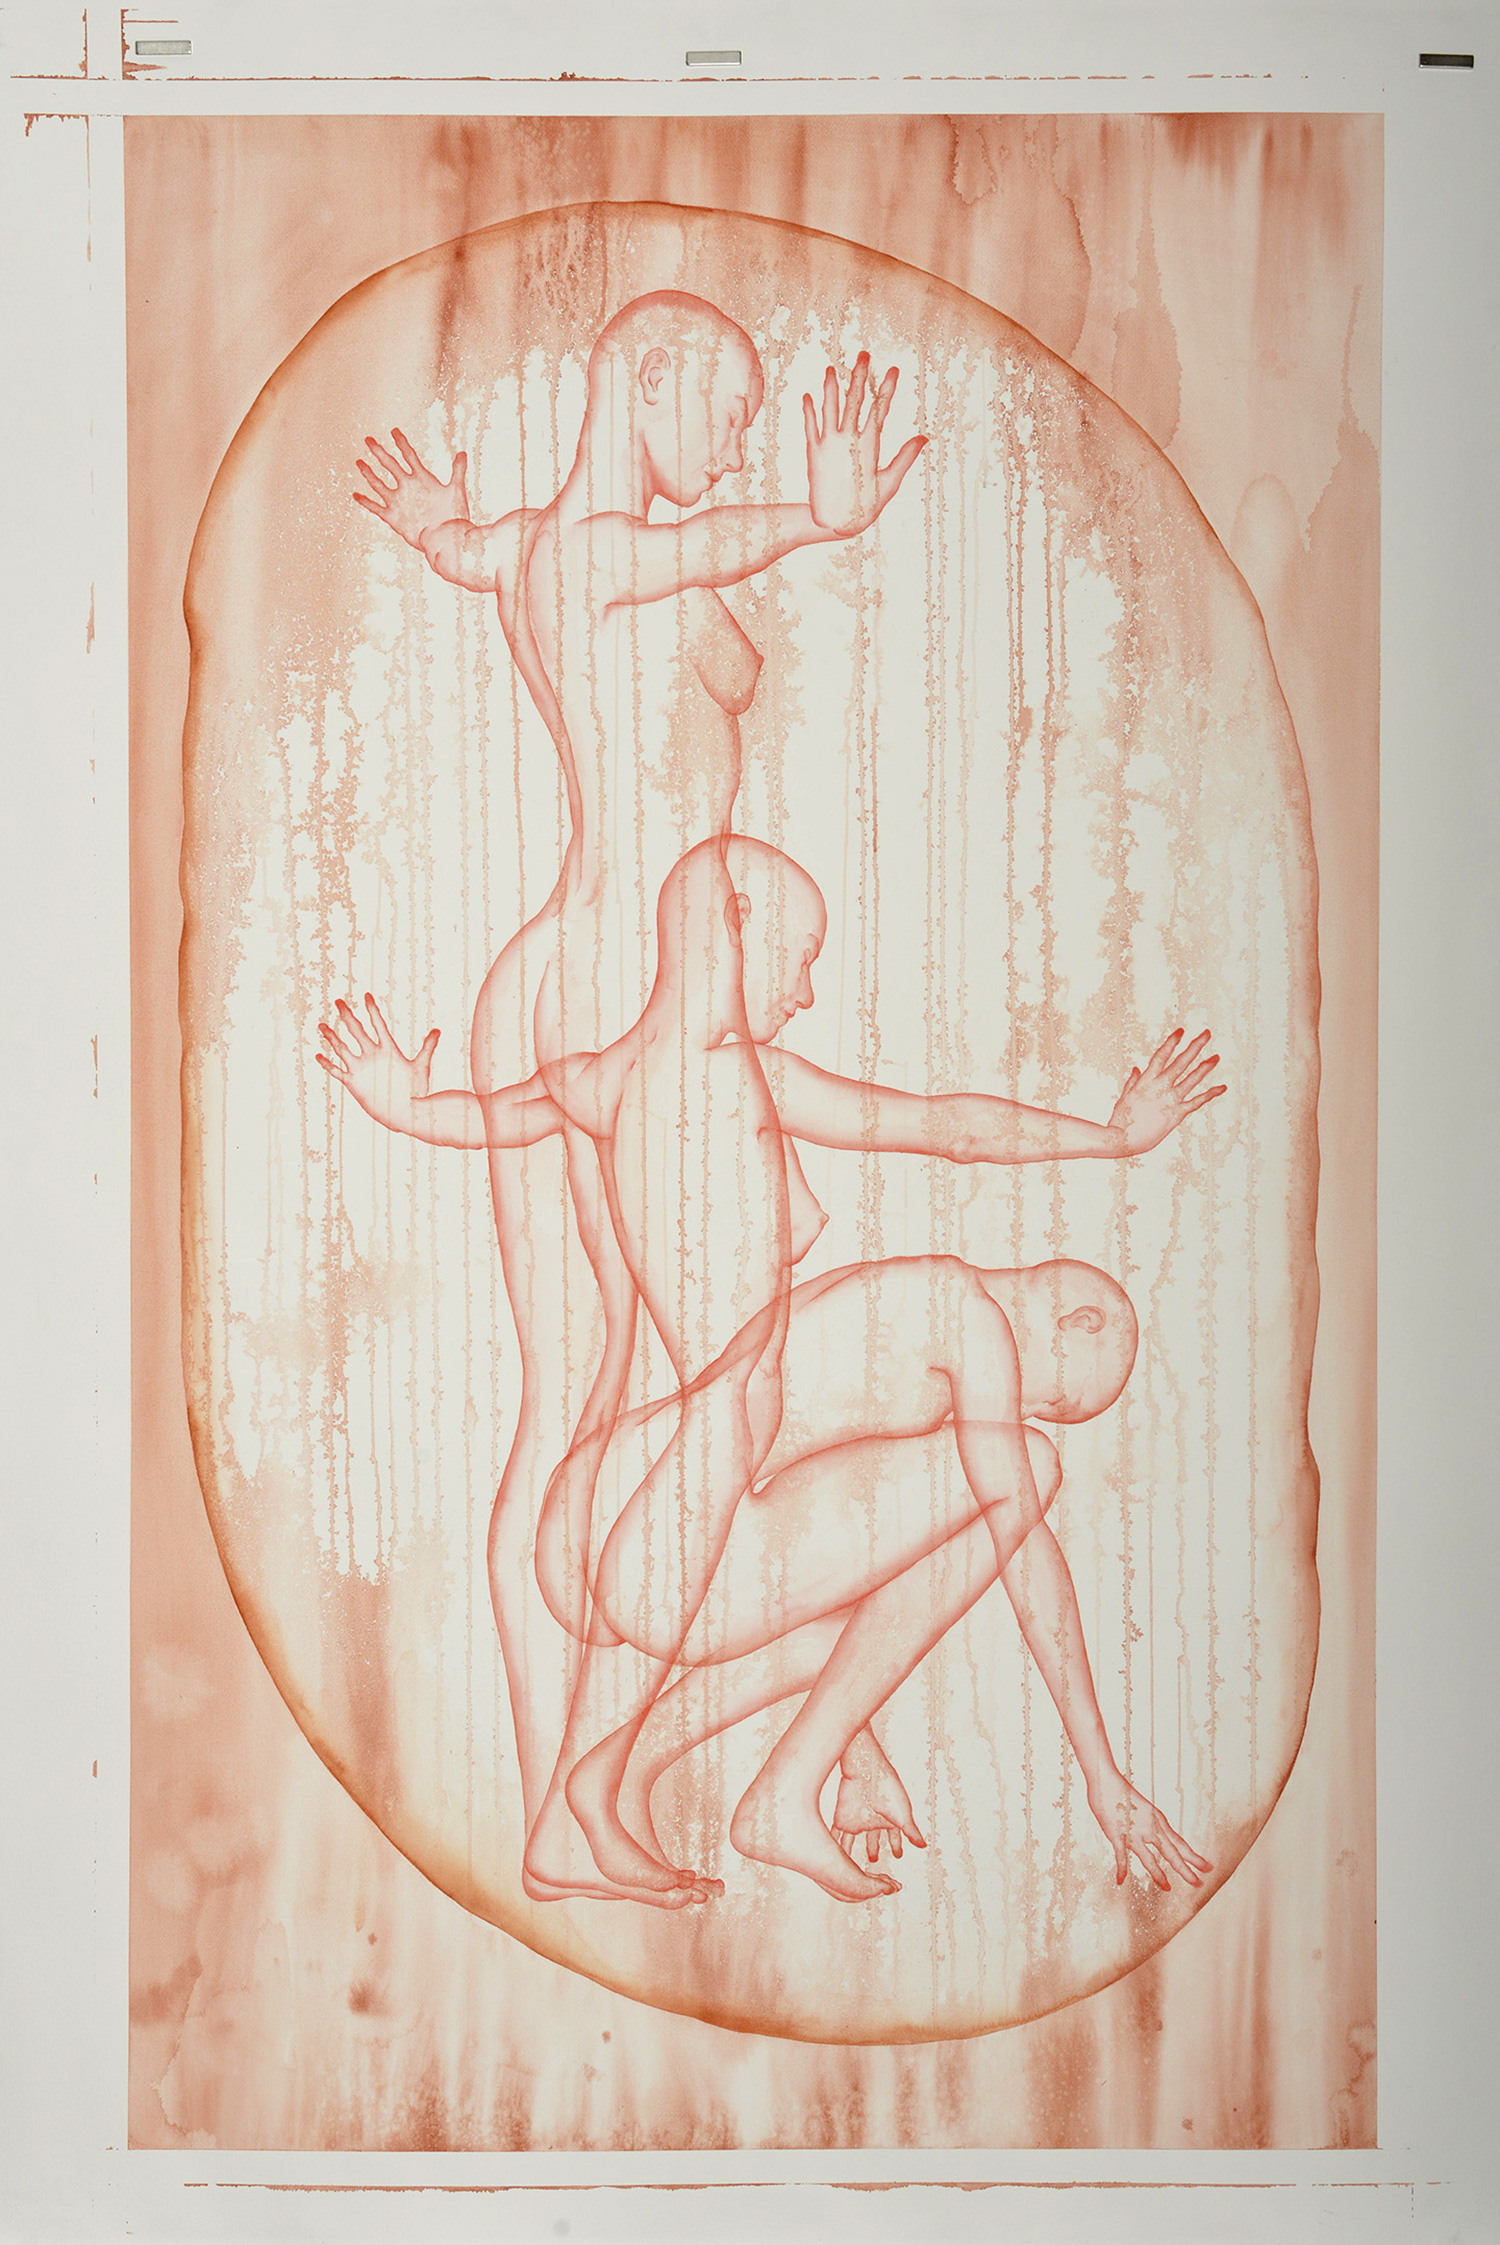 Stefano Bolzano, Aura sentimentale, acquerello su carta, 90x145 cm, 2020.